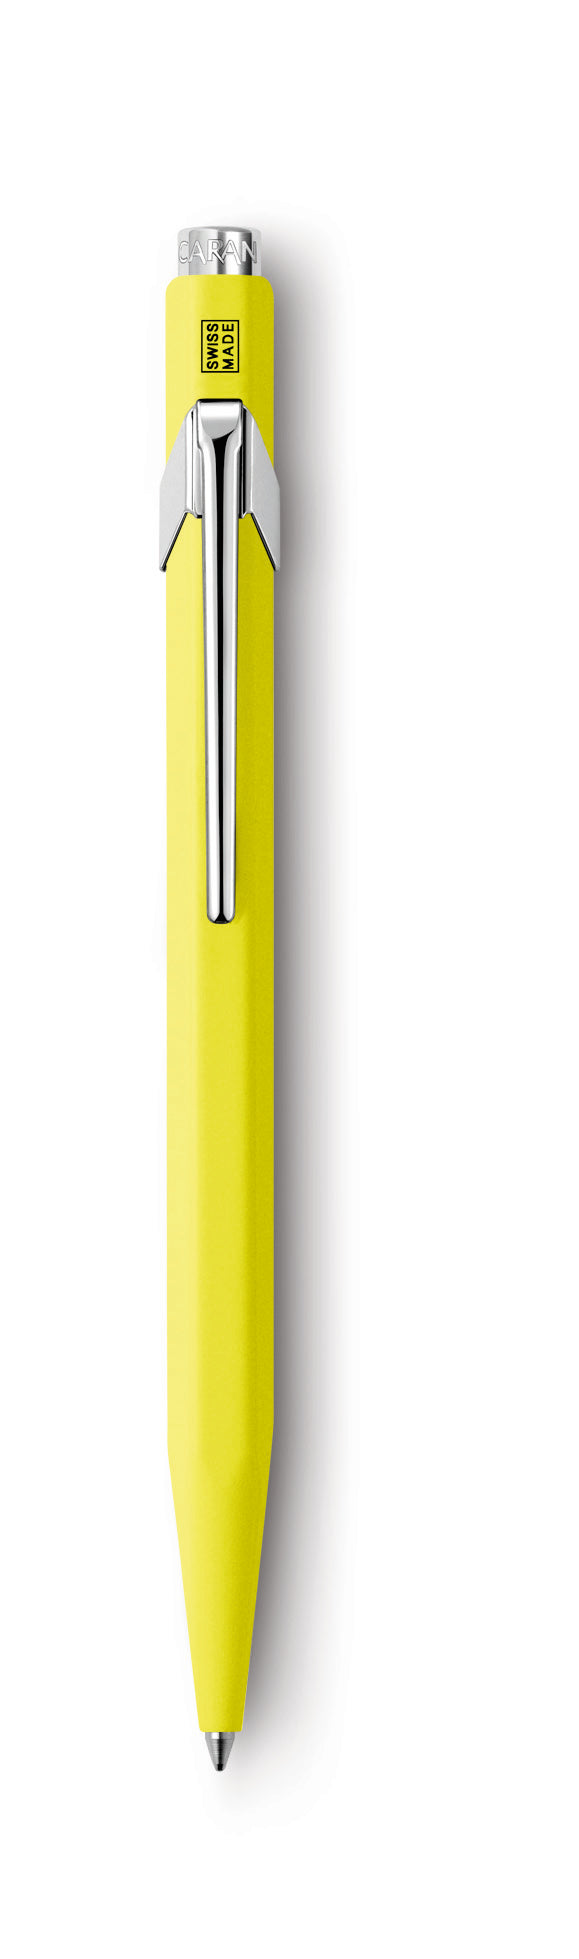 Caran d'Ache Classic Metal Ballpoint Pen- Fluorescent Series